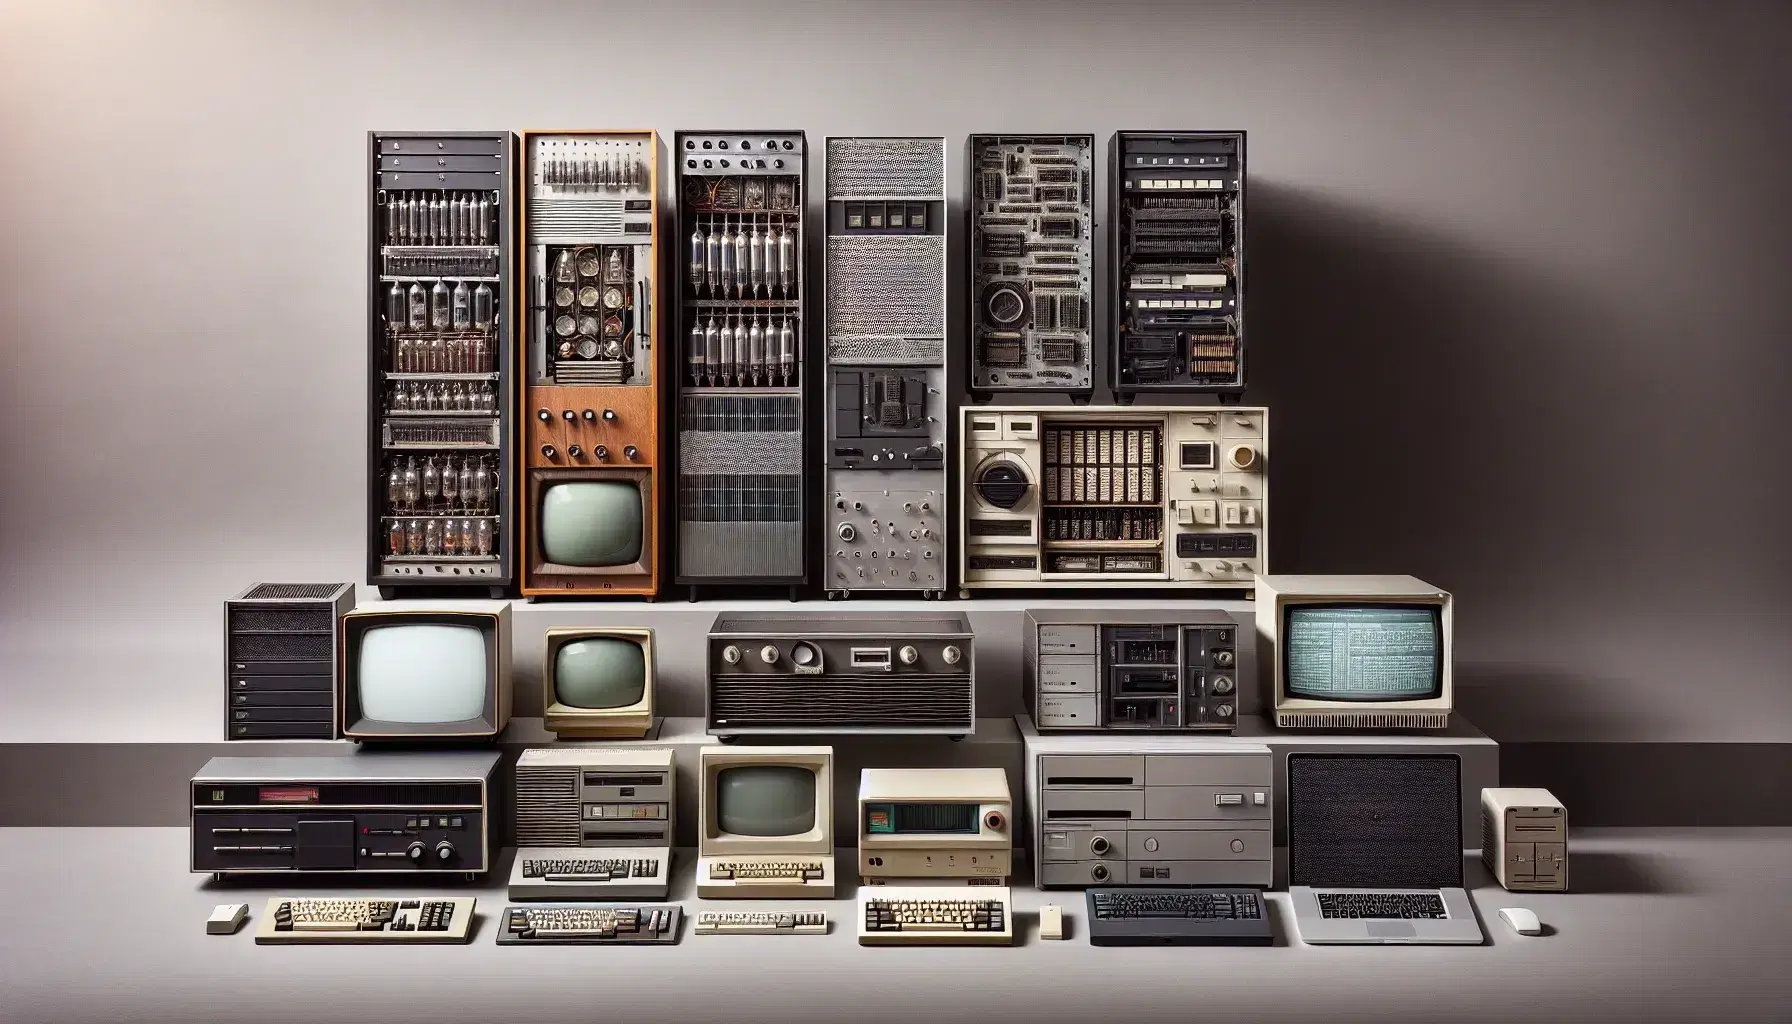 Colección de computadoras desde la primera generación con tubos de vacío hasta la moderna laptop, mostrando la evolución tecnológica.